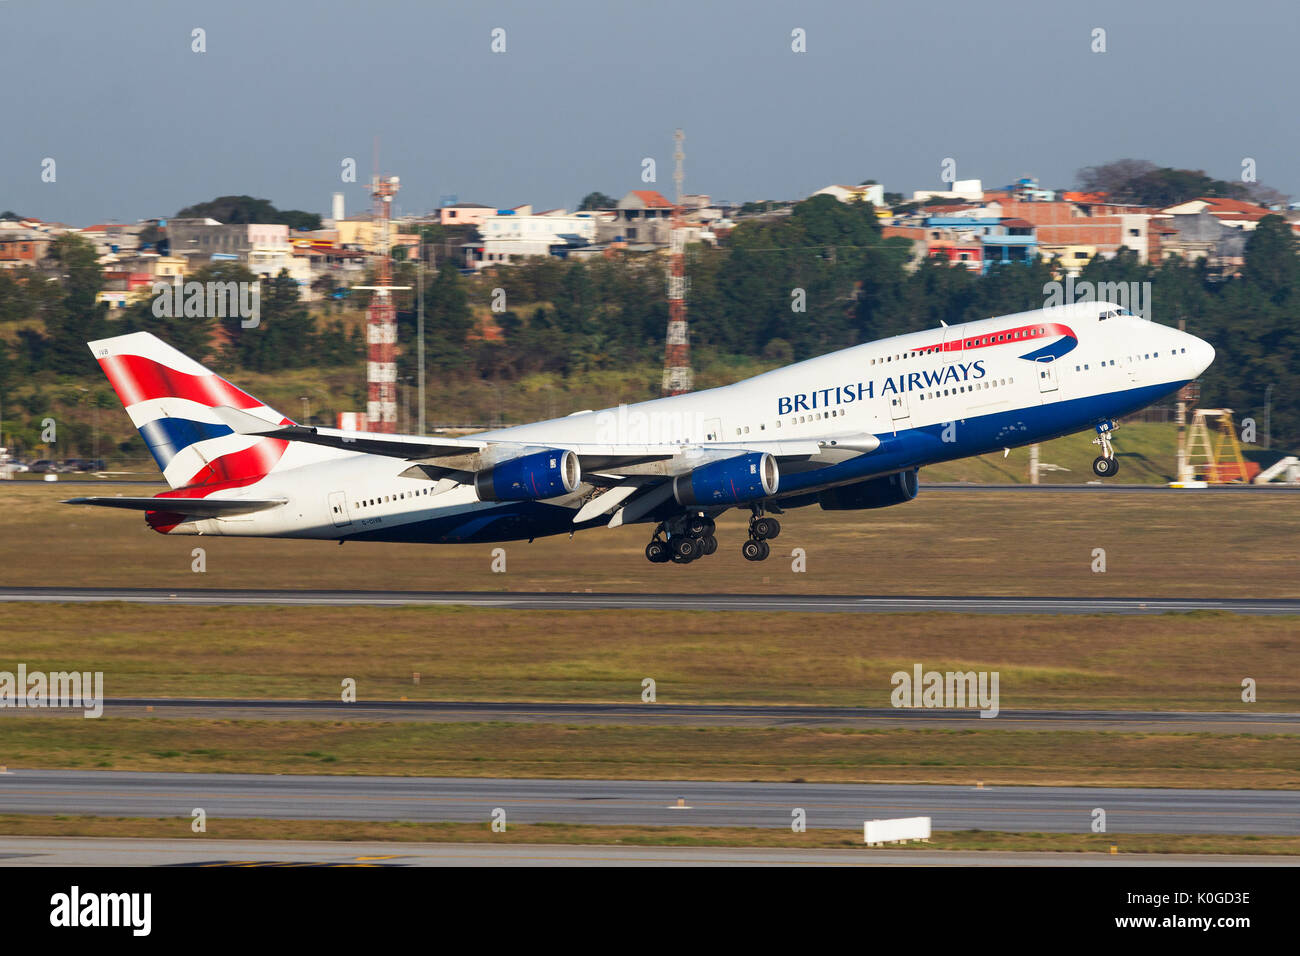 Boeing 747-400 der British Airways am Flughafen GRU - Guarulhos International Airport, Sao Paulo, Brasilien - 2016 Stockfoto